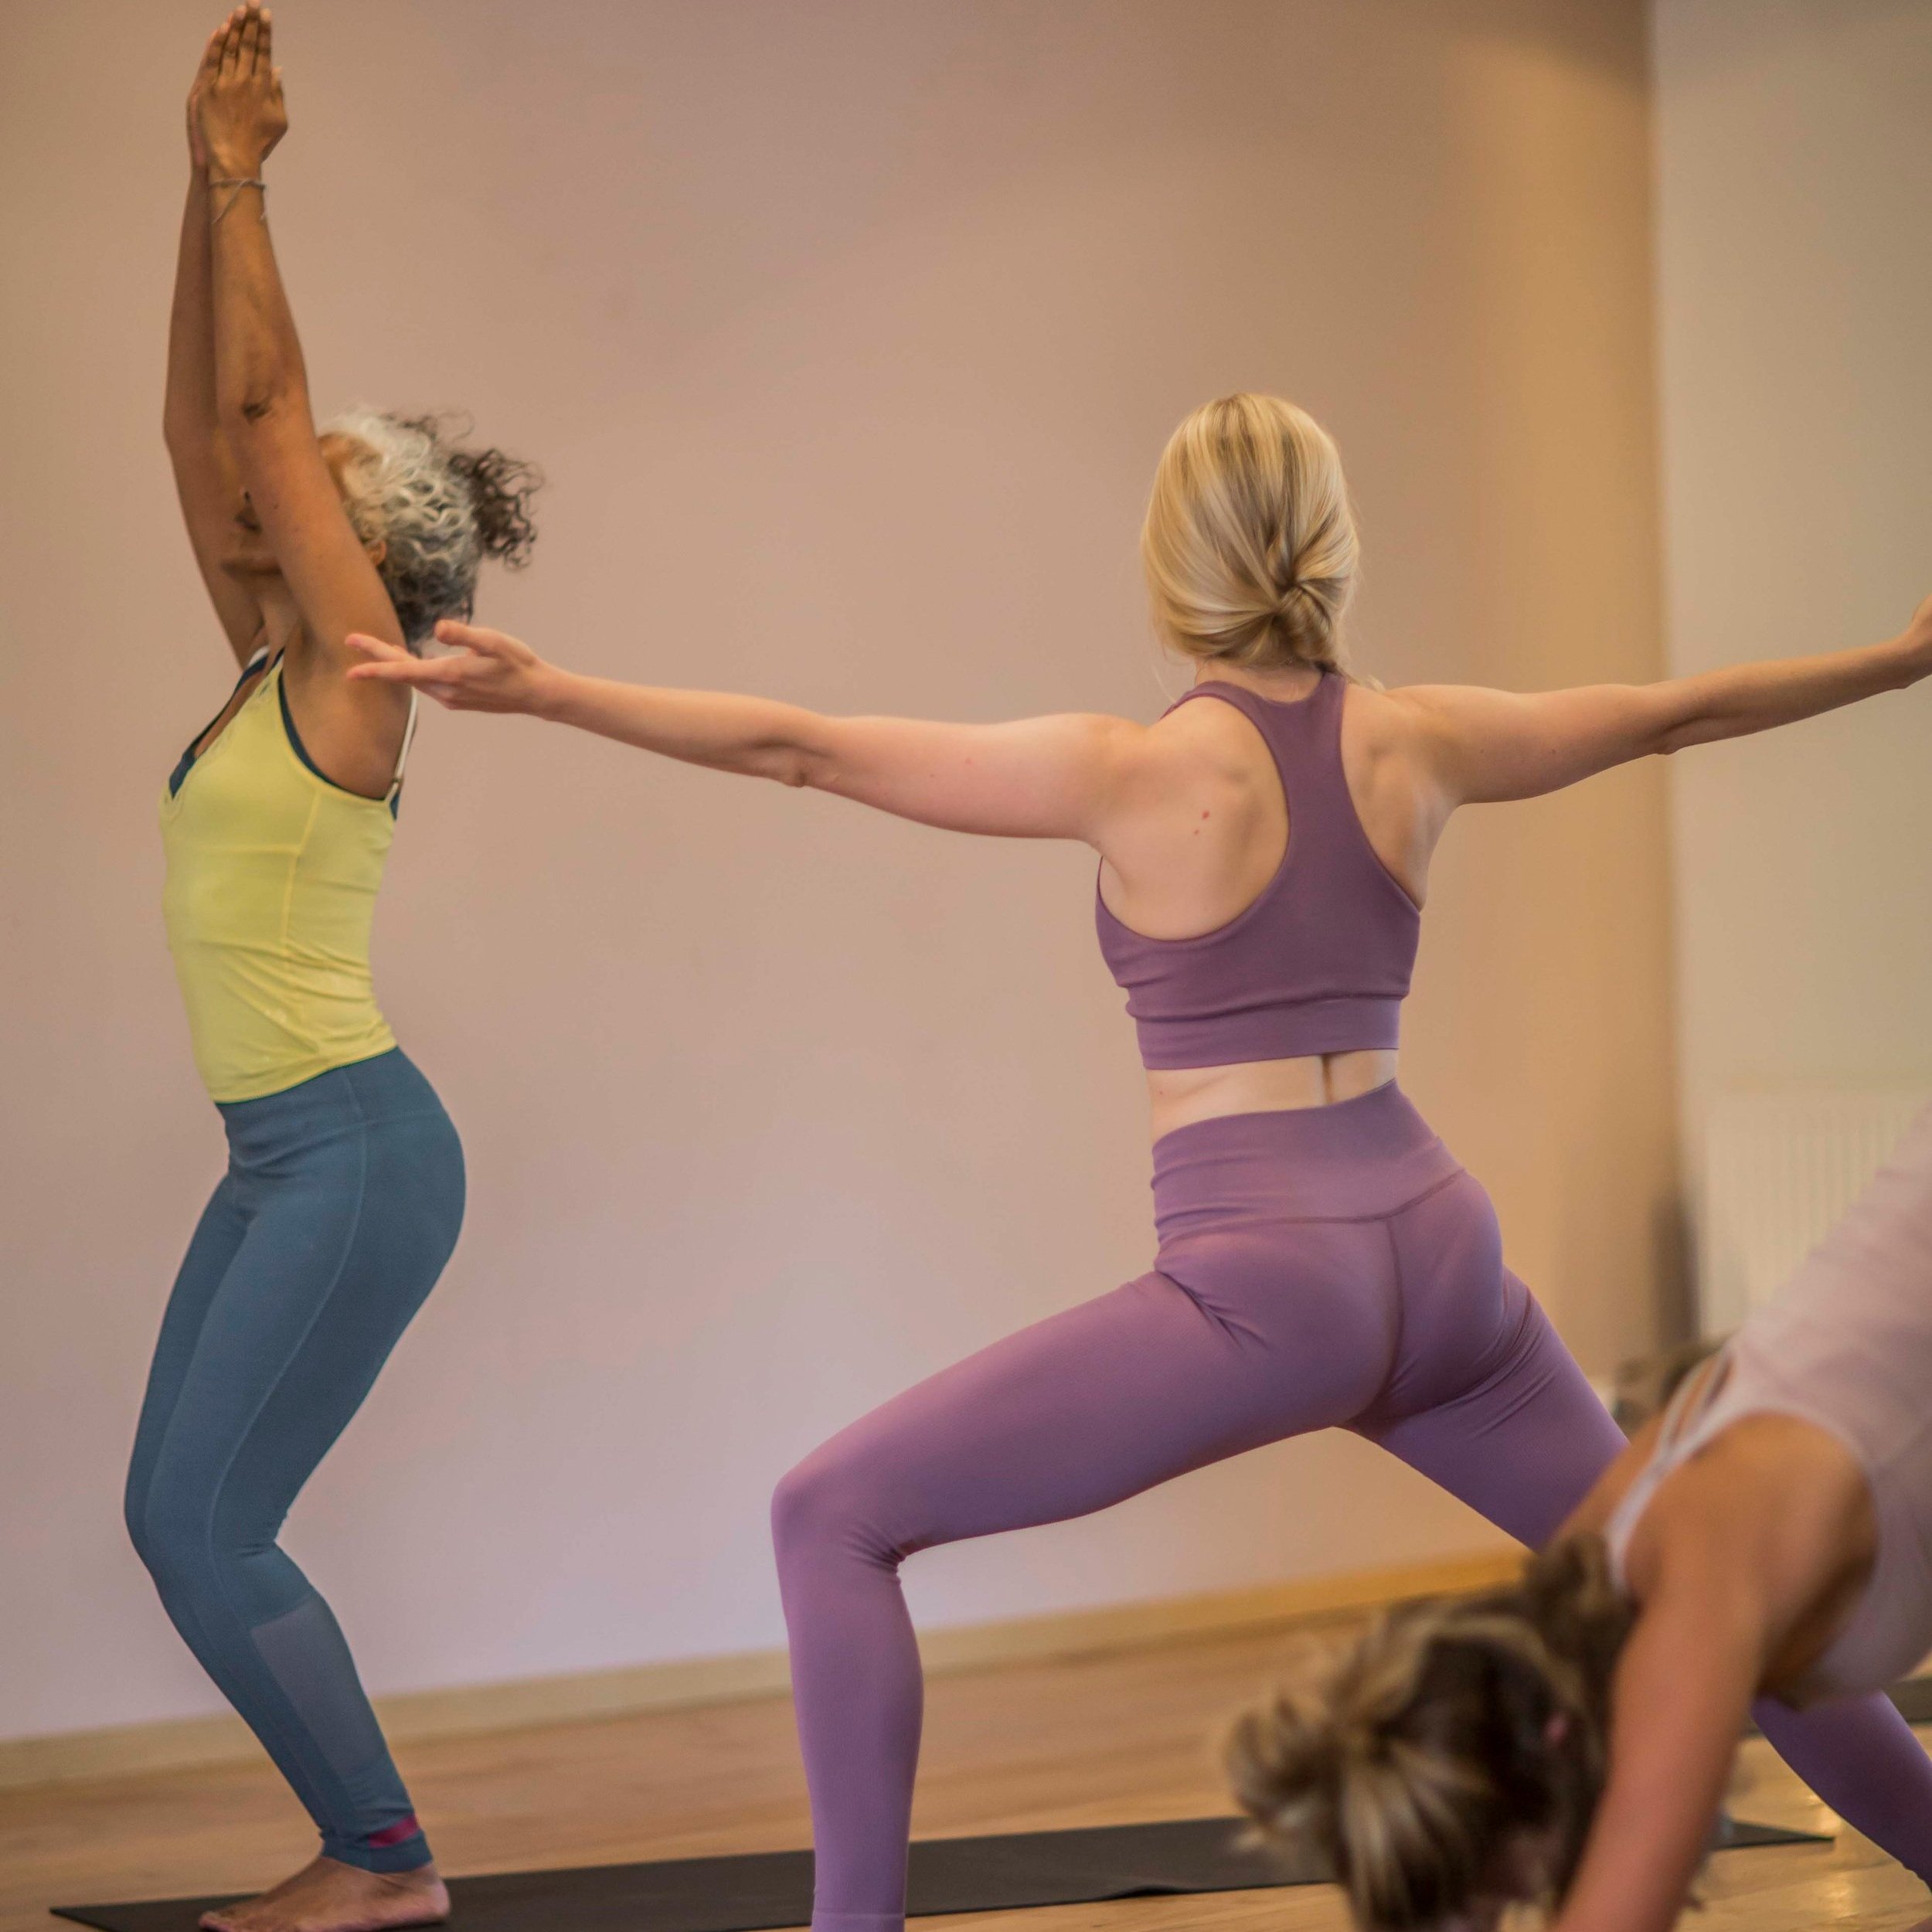 Ashtanga Yoga — Yoga Moves